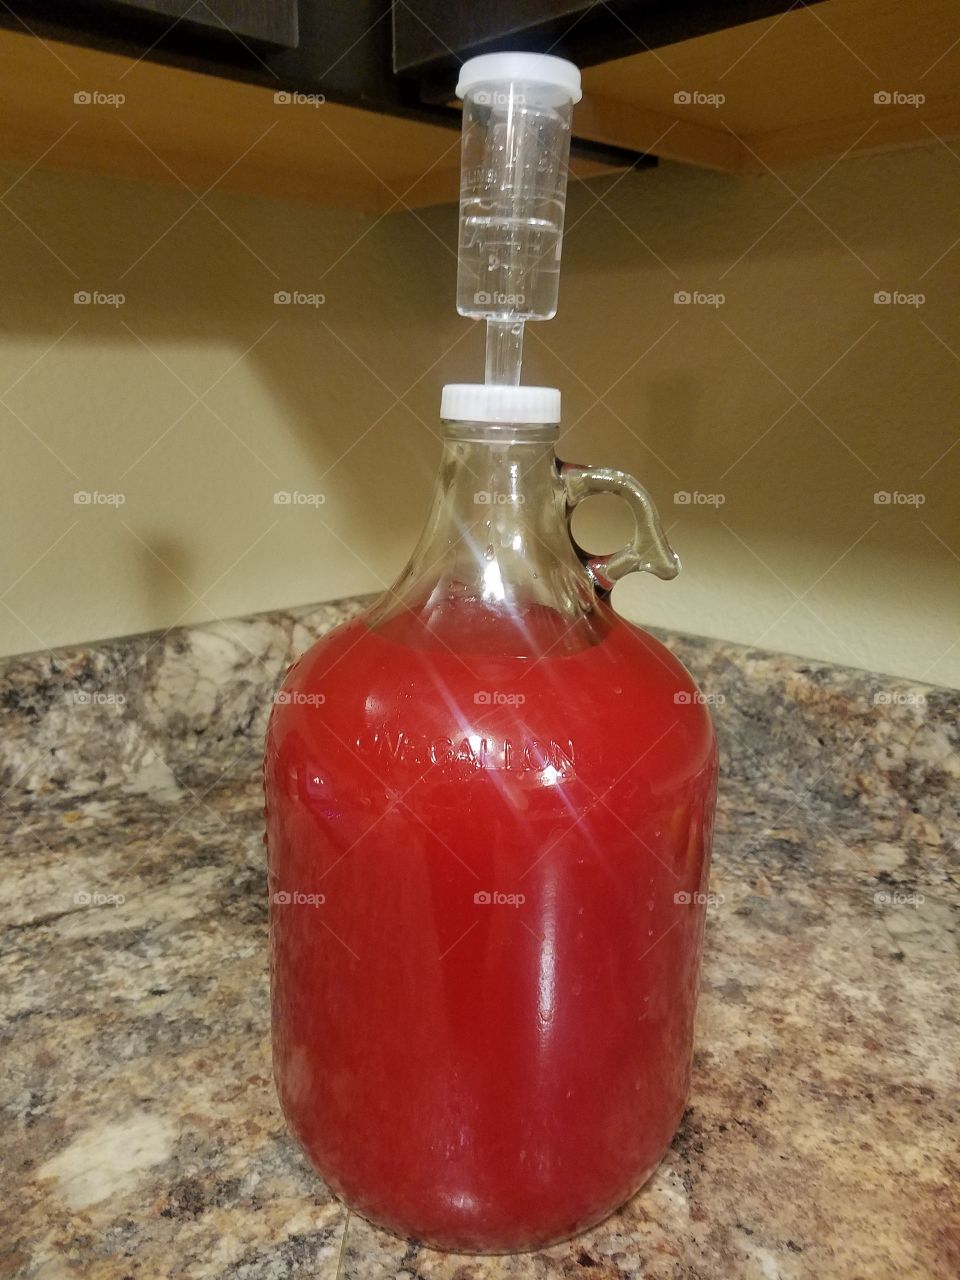 My Homemade Raspberry Wine!